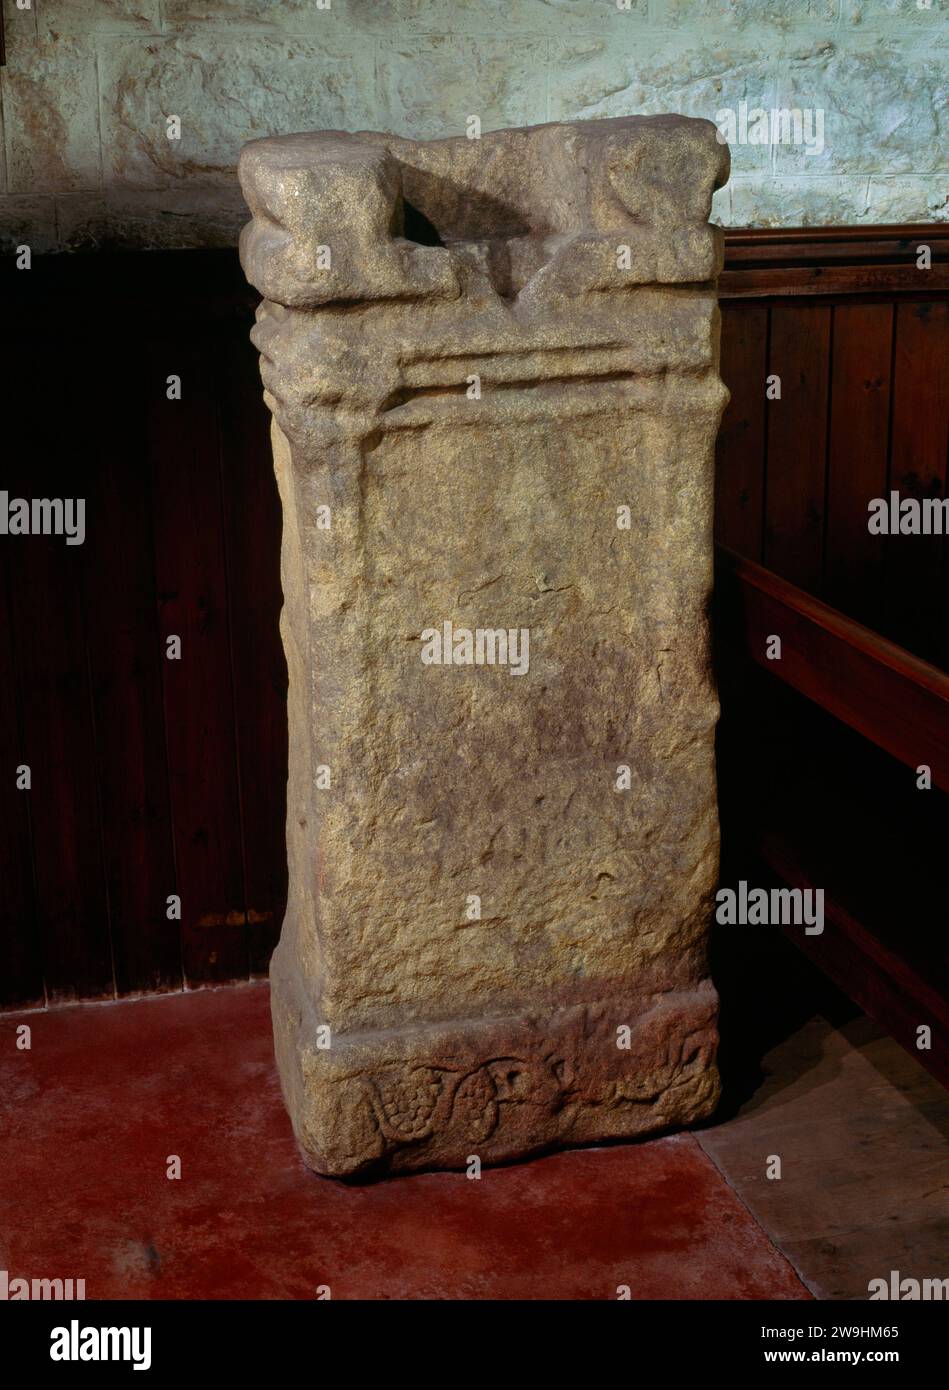 Un autel romain à l'intérieur de l'église St Oswald, Heavenfield, Northumberland, Angleterre, Royaume-Uni, avec une fente découpée dans le haut pour prendre le manche d'une croix chrétienne. Banque D'Images